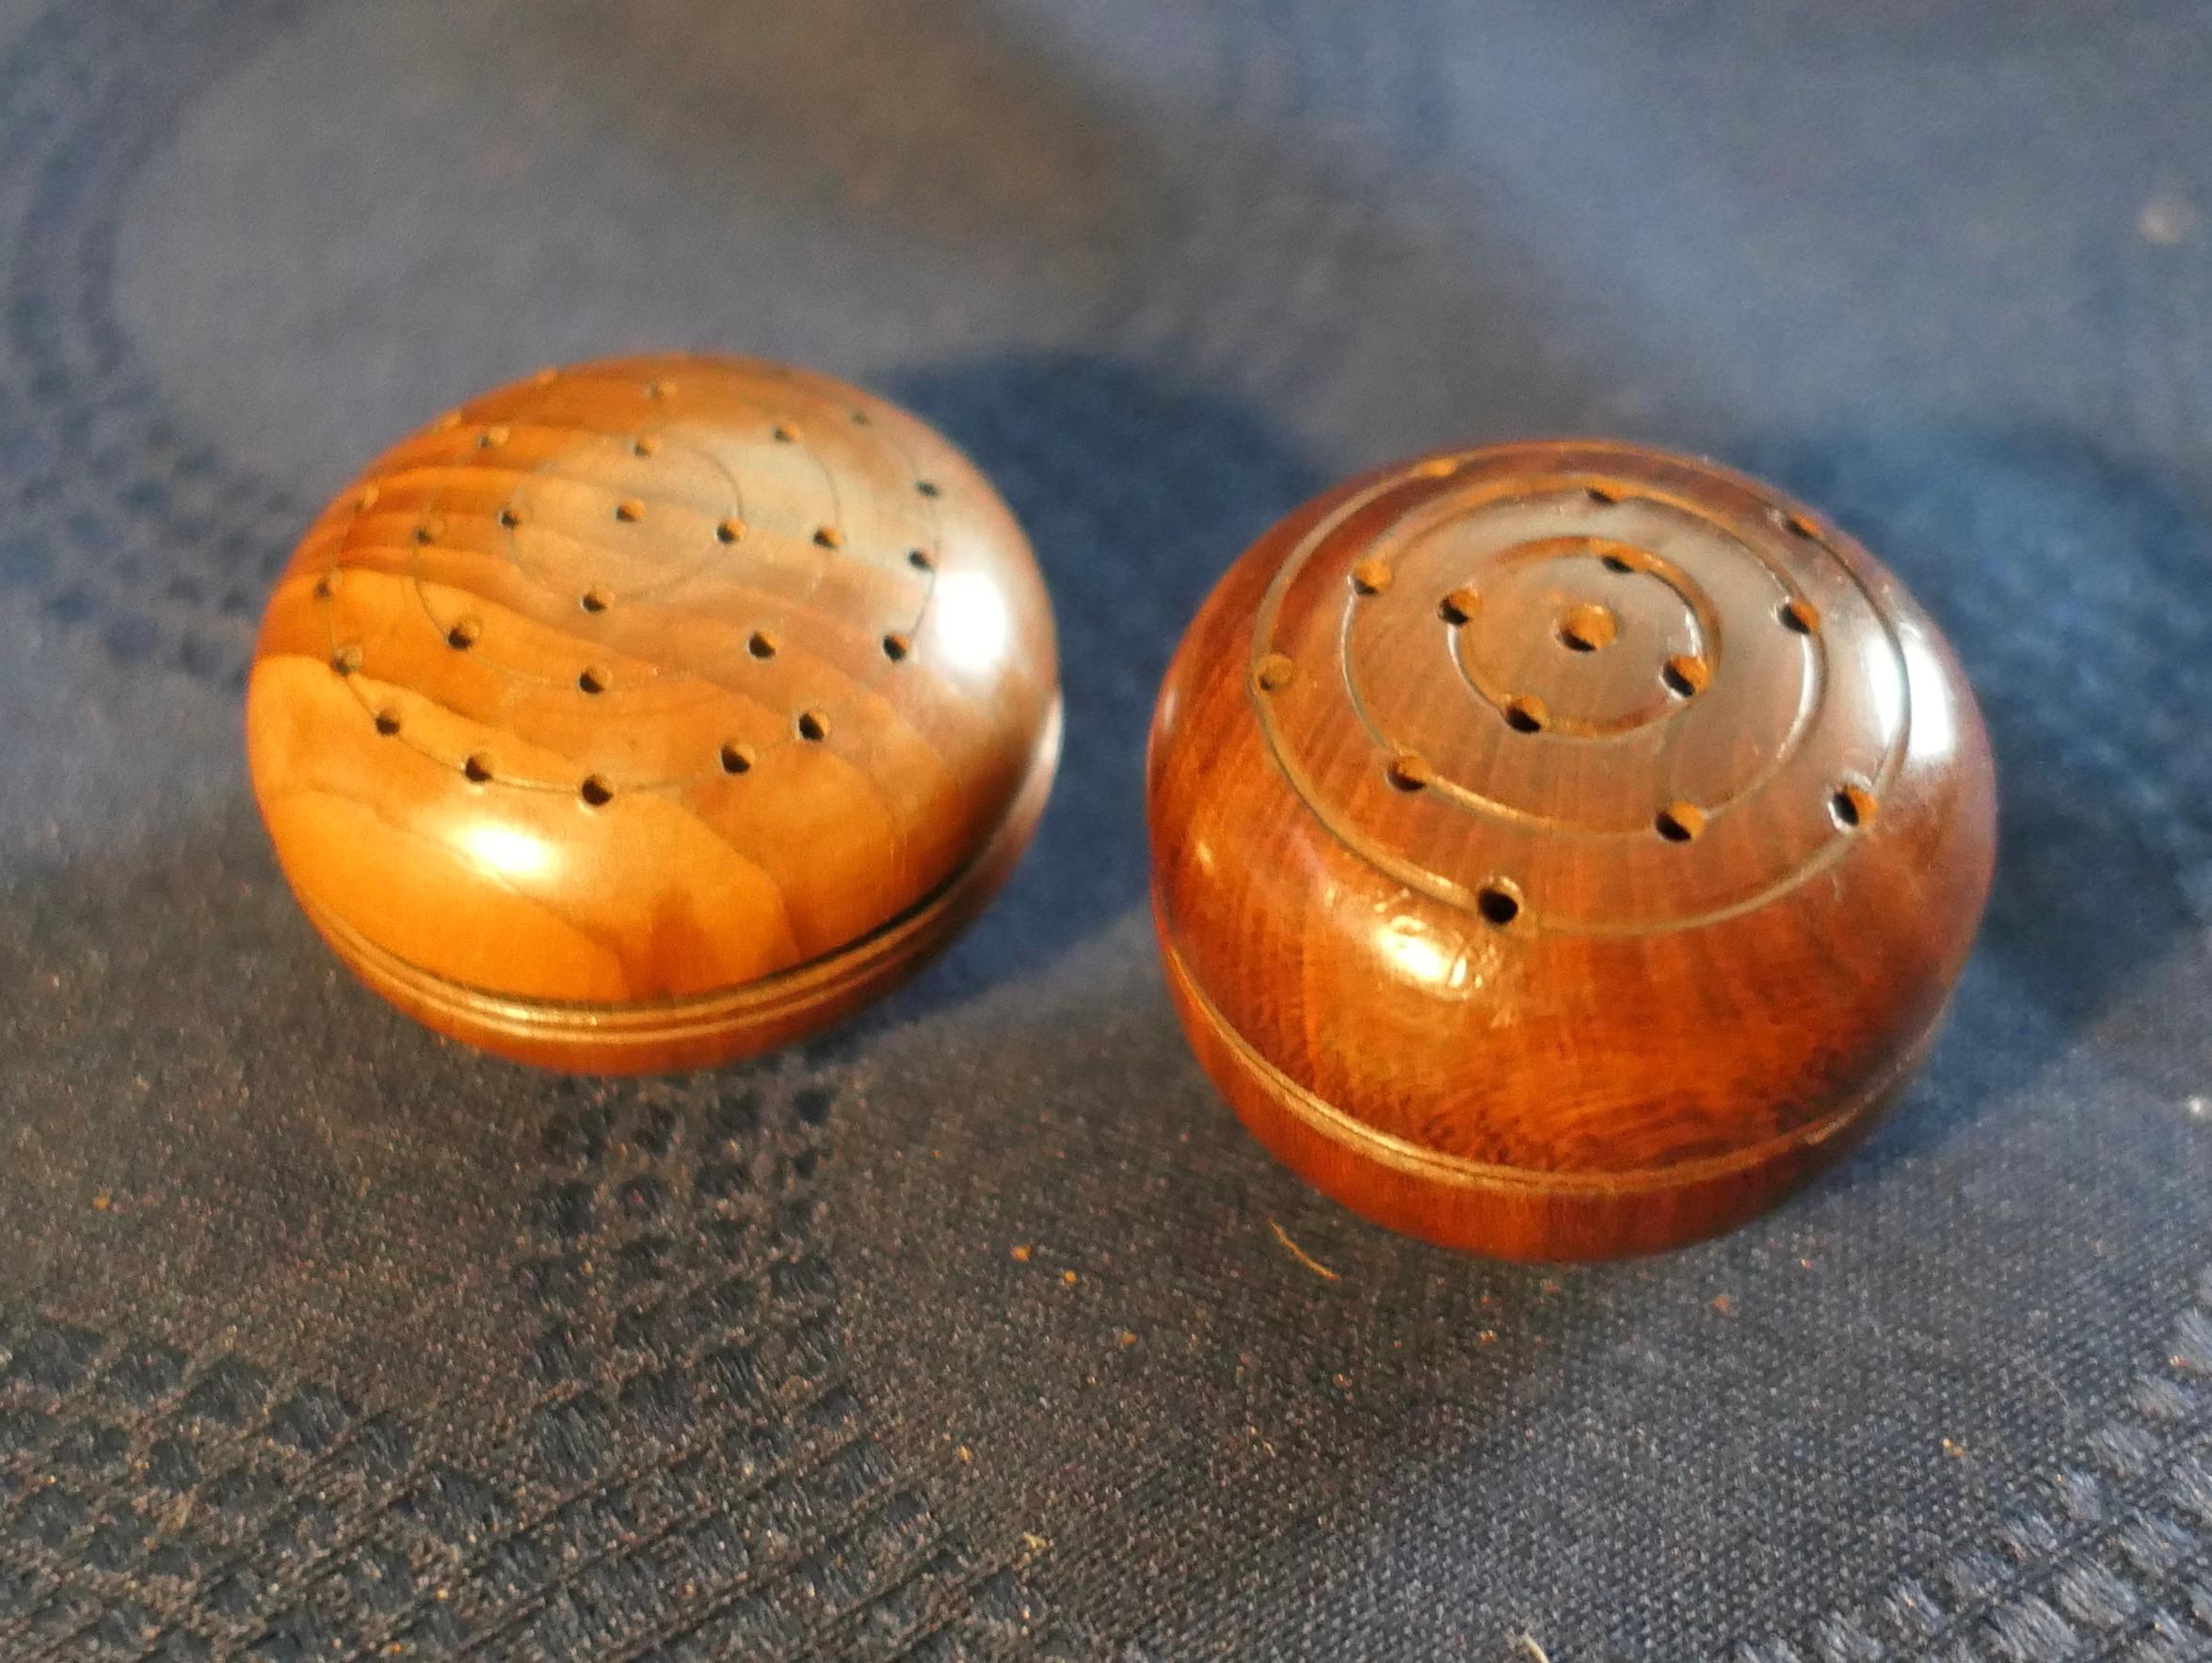 Ein Satz von 2 Pomandern aus Eibenholz

2 kleine runde Damenpomander aus Eibenholz aus dem frühen 19. Jahrhundert, die in der Mitte aufgeschraubt werden können und auf beiden Seiten Duftlöcher haben. Einer von ihnen hat das, was der ursprüngliche